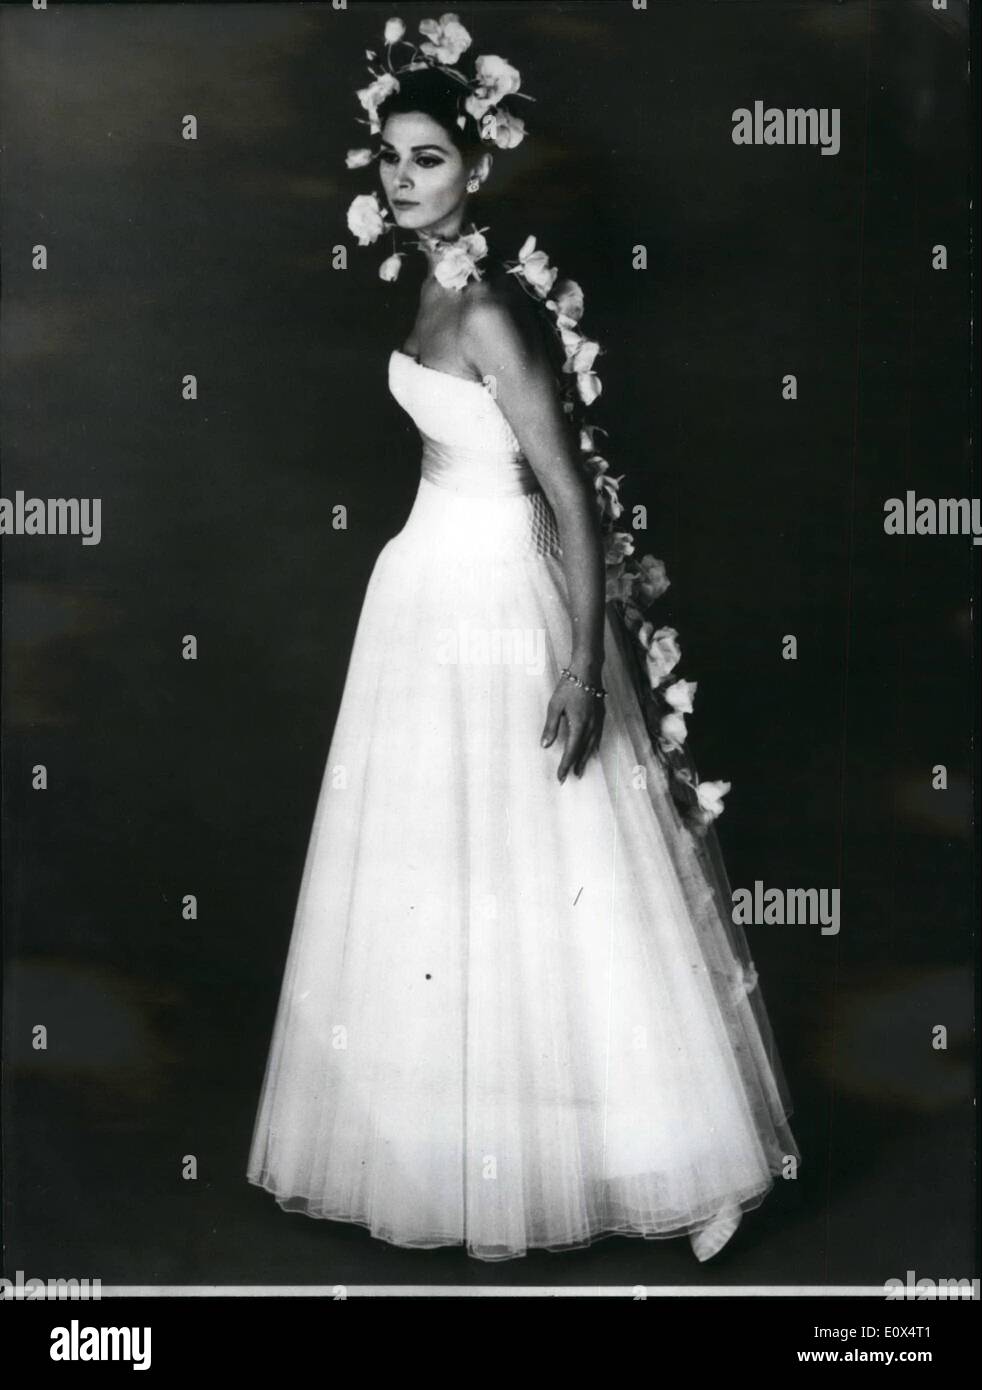 Abril 04, 1965 - moda primavera y verano 1965: vestido de noche largo en seda blanca diseñado por el modista de París Balmain para sus colecciones de primavera y verano. Foto de stock